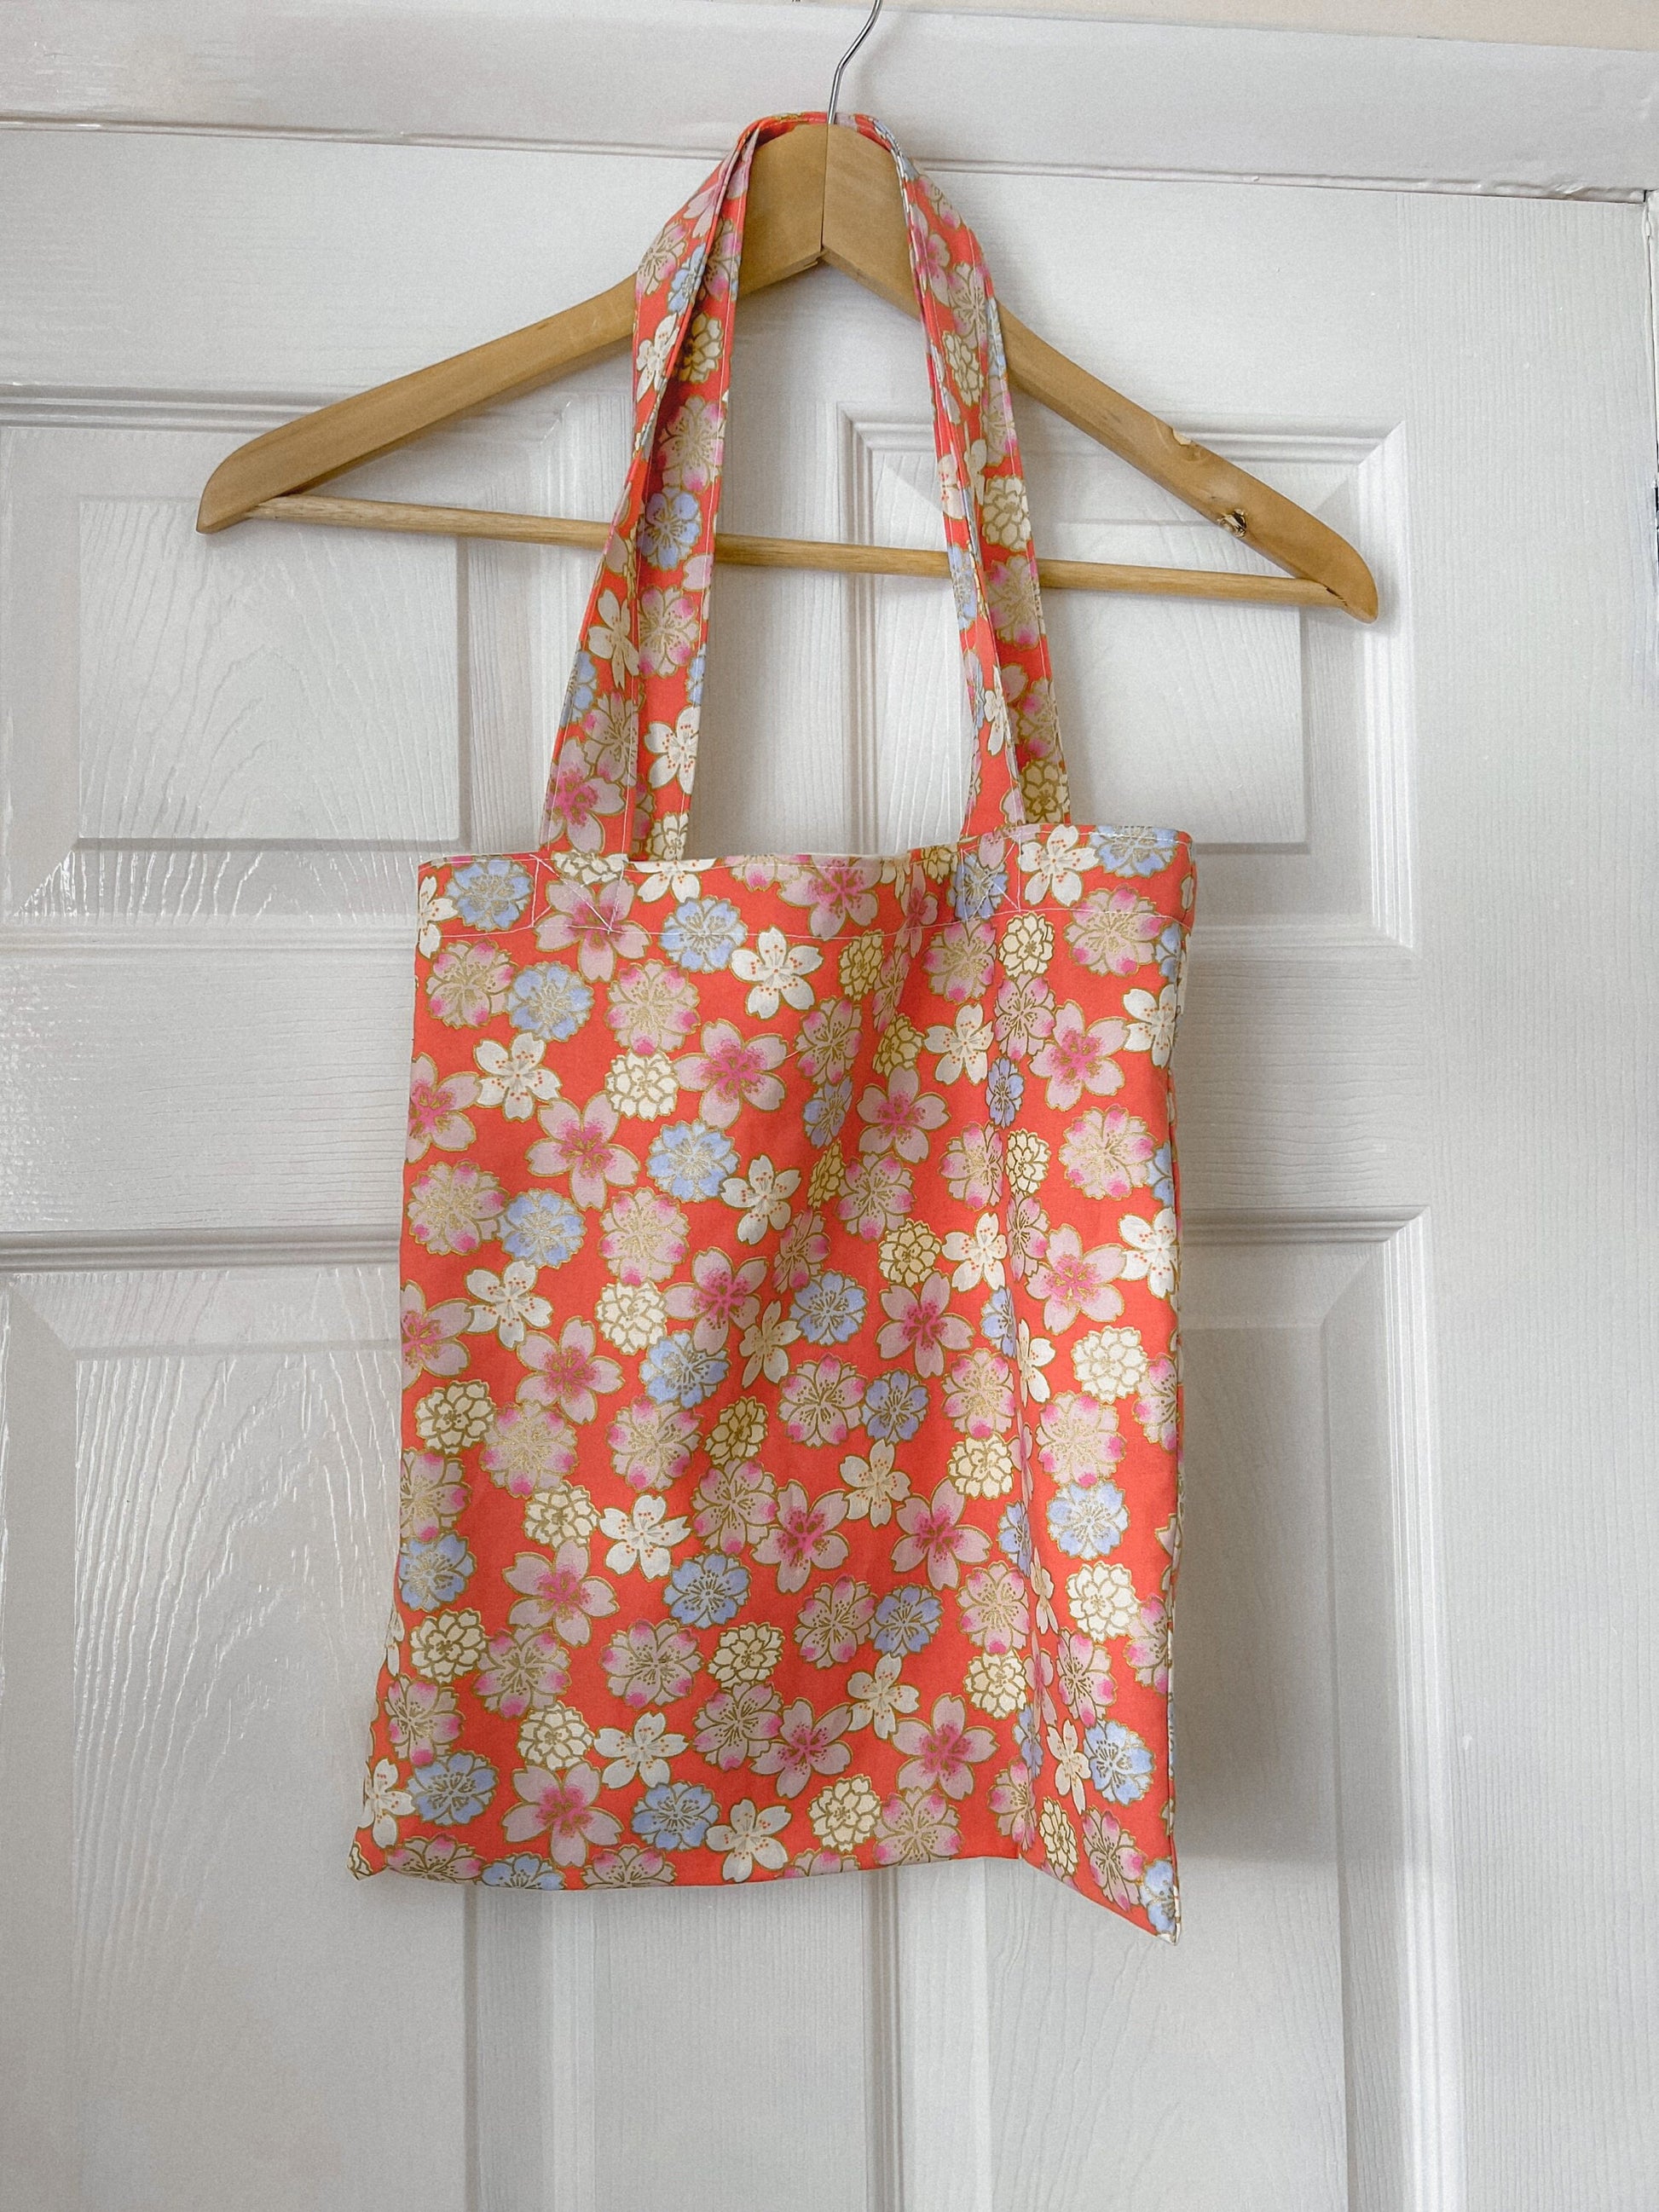 FLORAL TOTE BAG orange peach oriental floral tote bag, fully reversible floral cotton tote bag, ditsy floral canvas bag handmade in U.K.